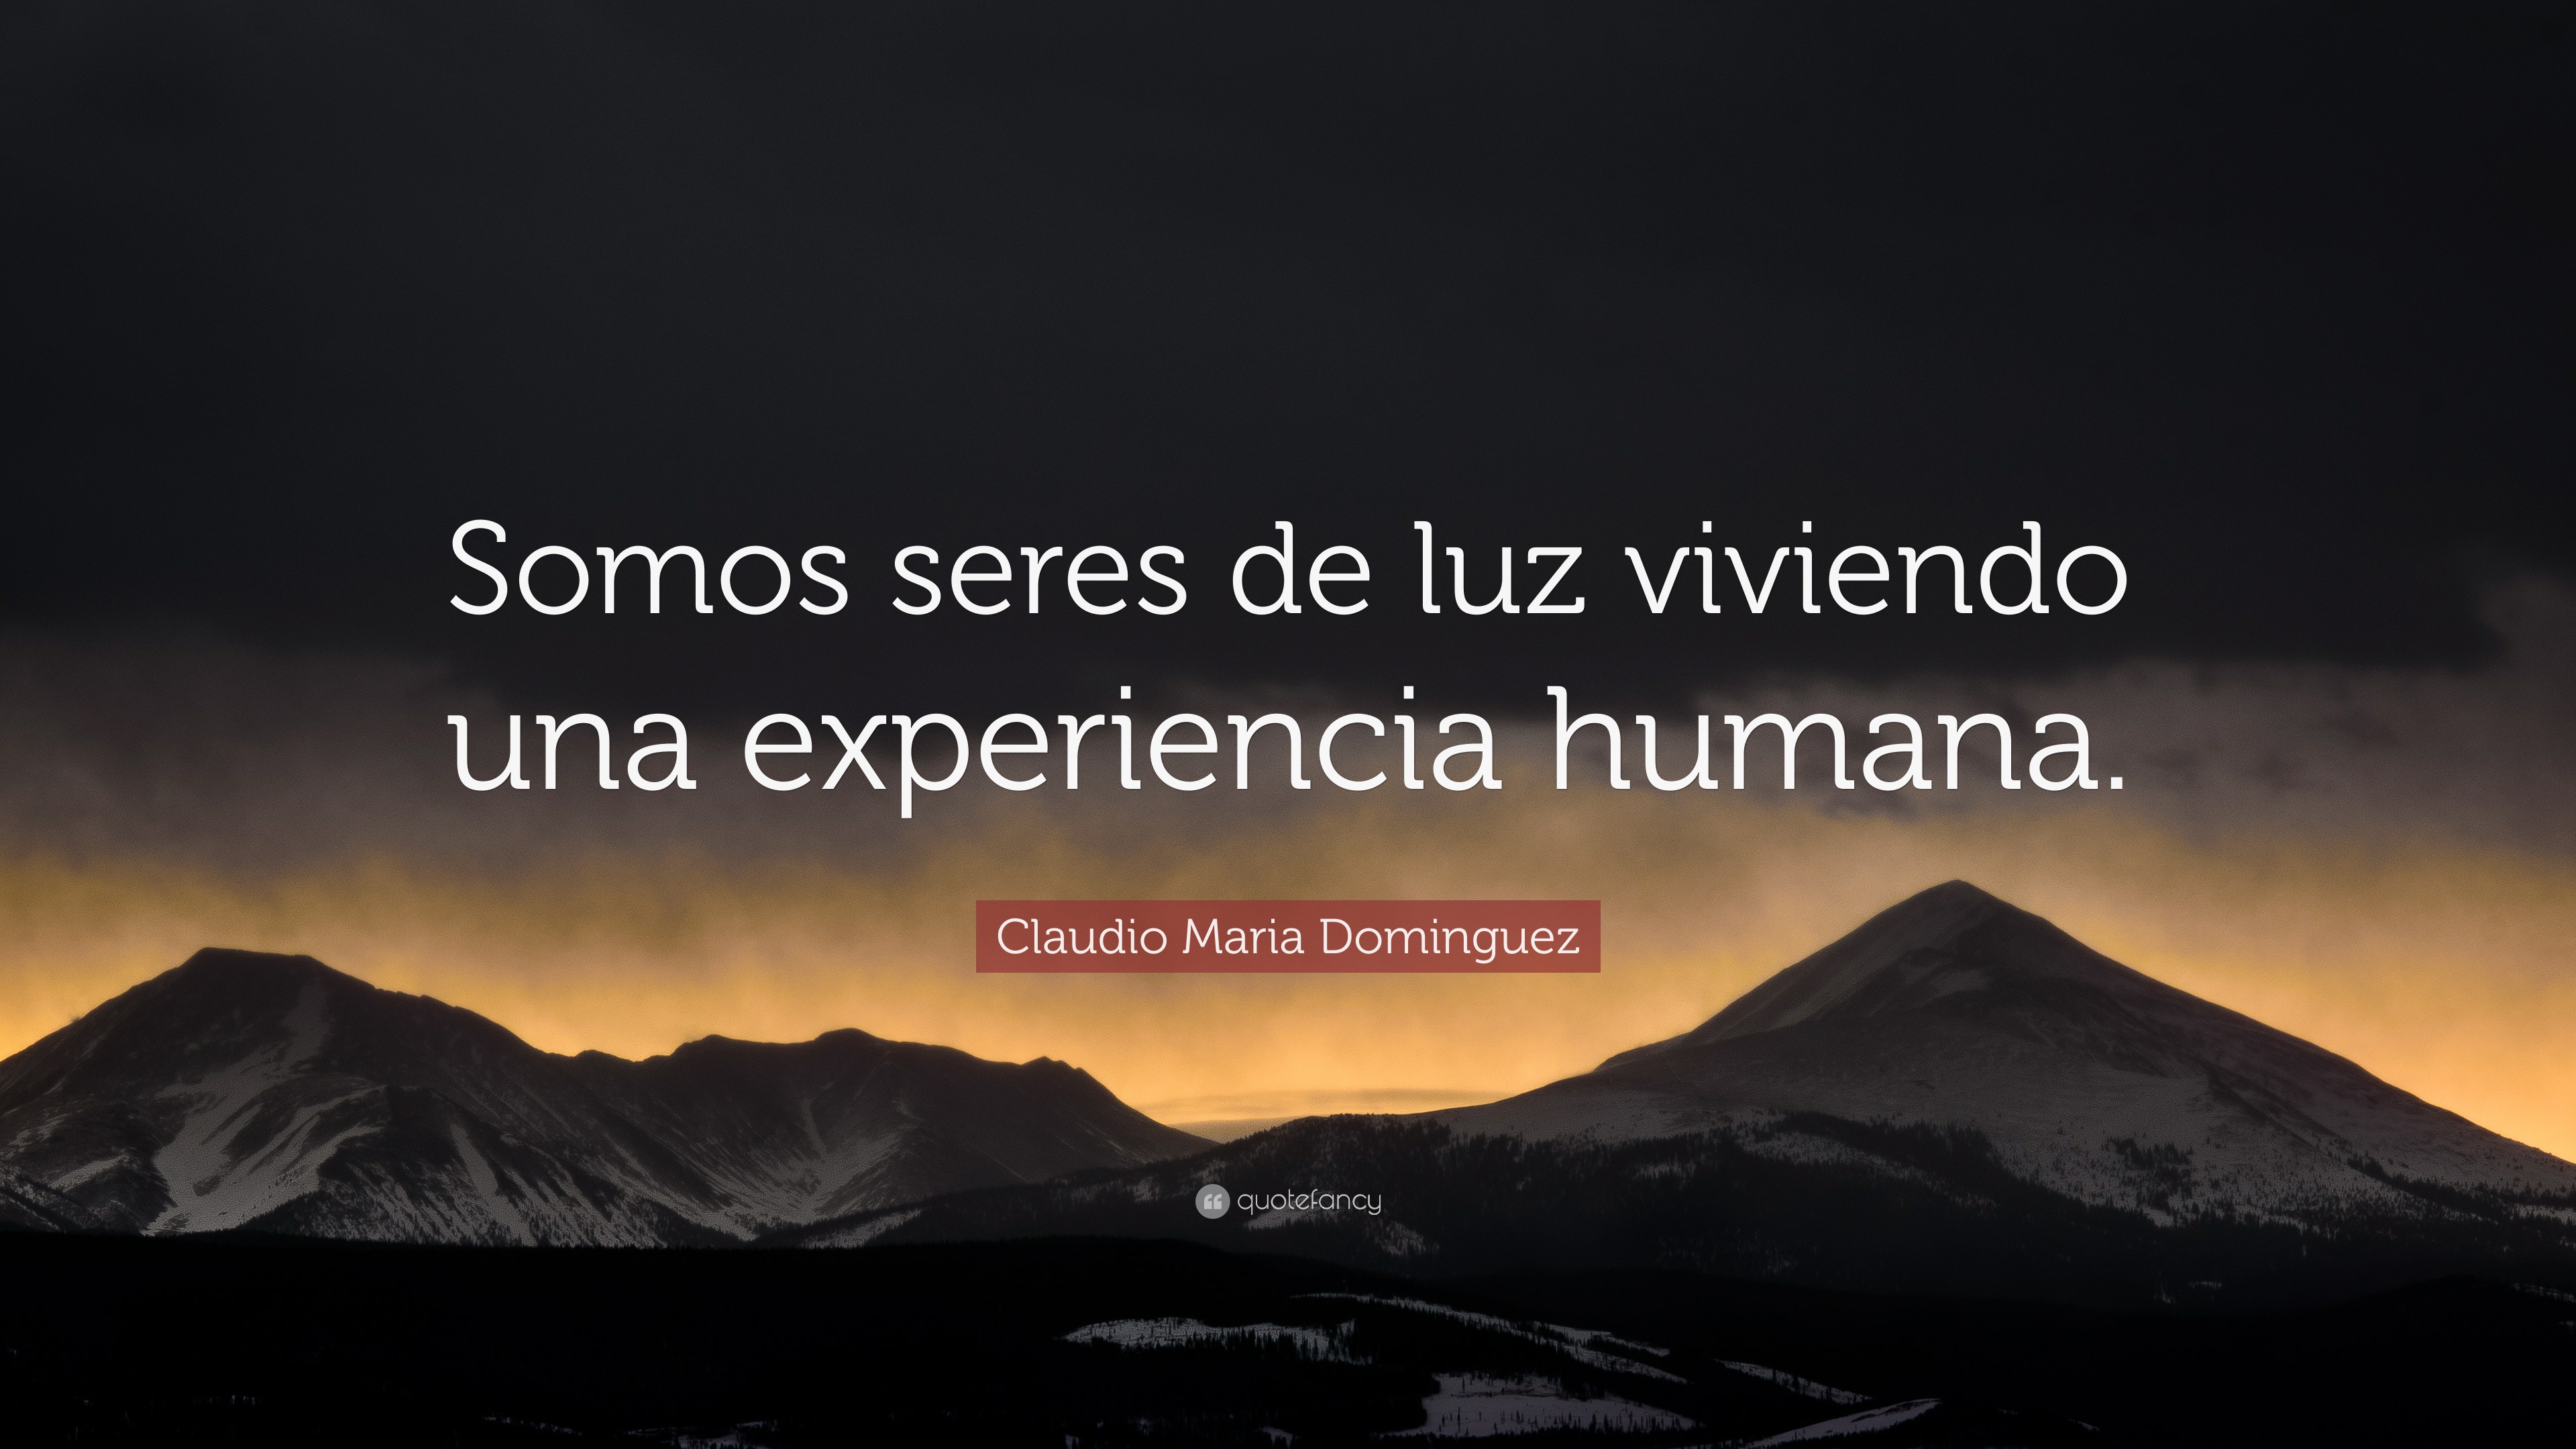 Claudio Maria Dominguez Quote: “Somos seres de luz viviendo una experiencia  humana.”